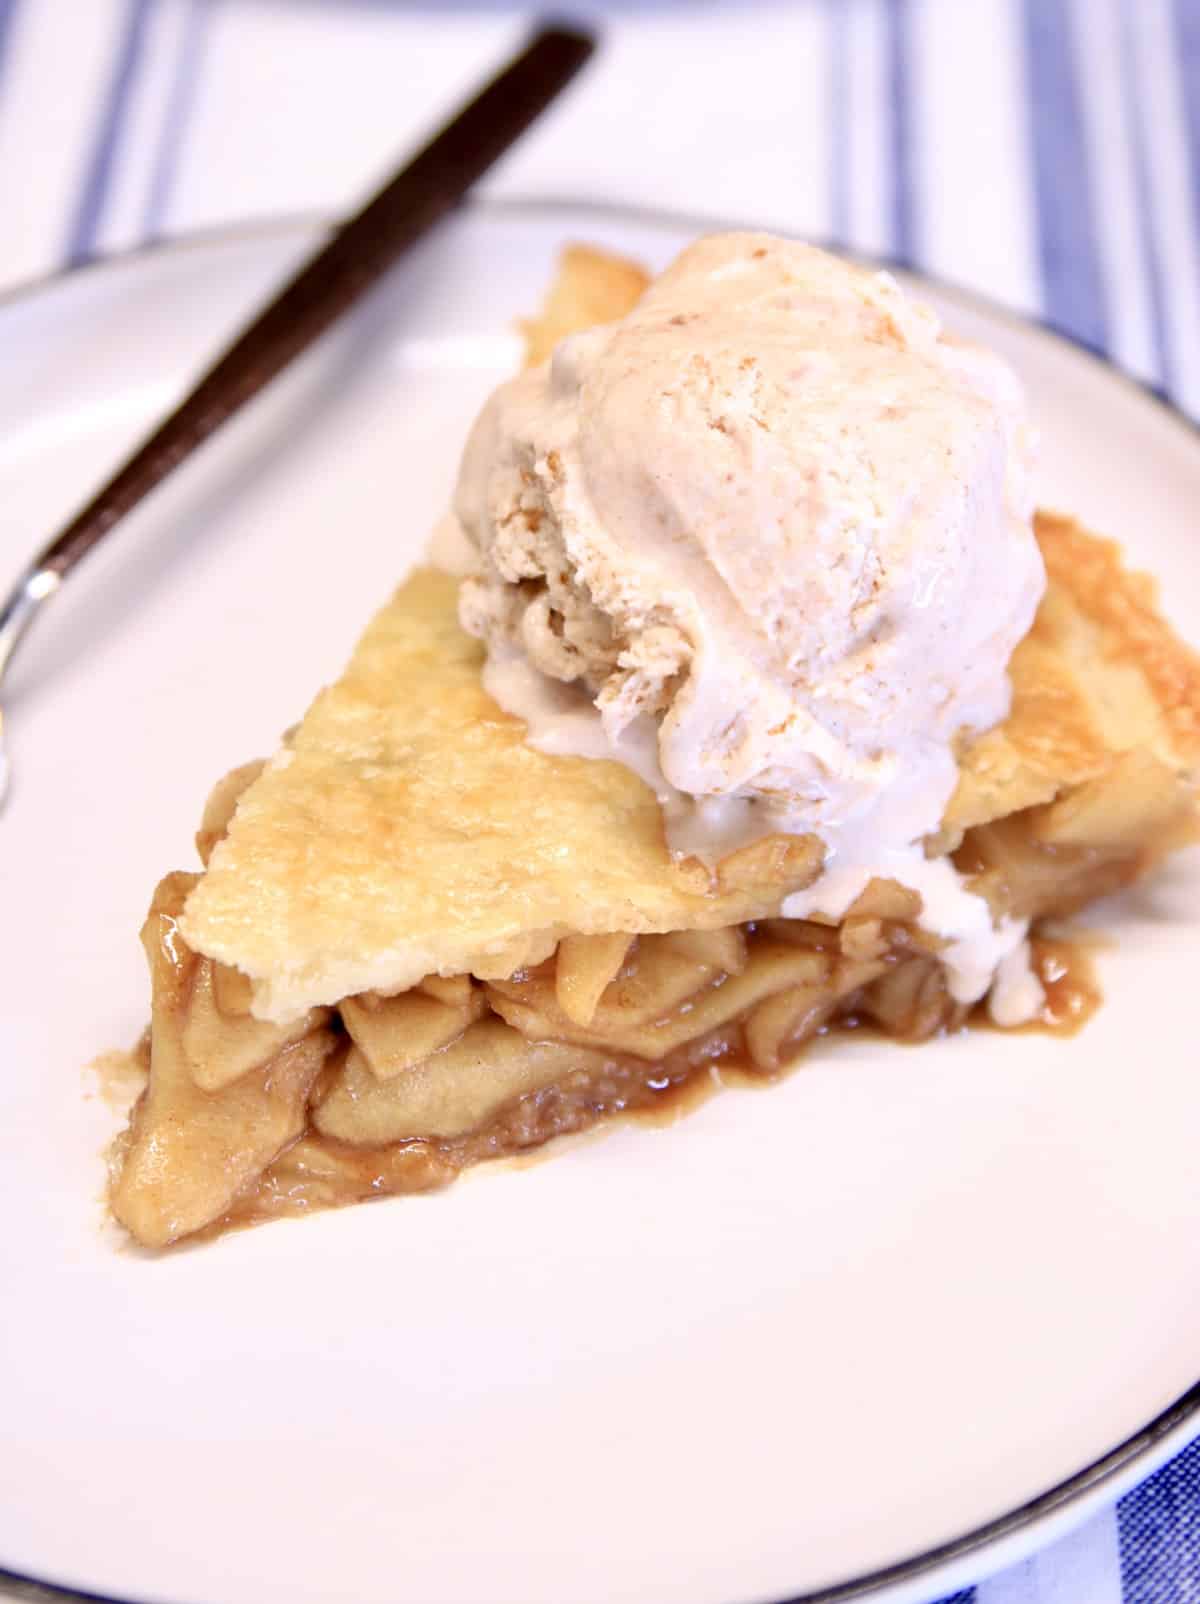 Slice of apple pie with cinnamon ice cream.